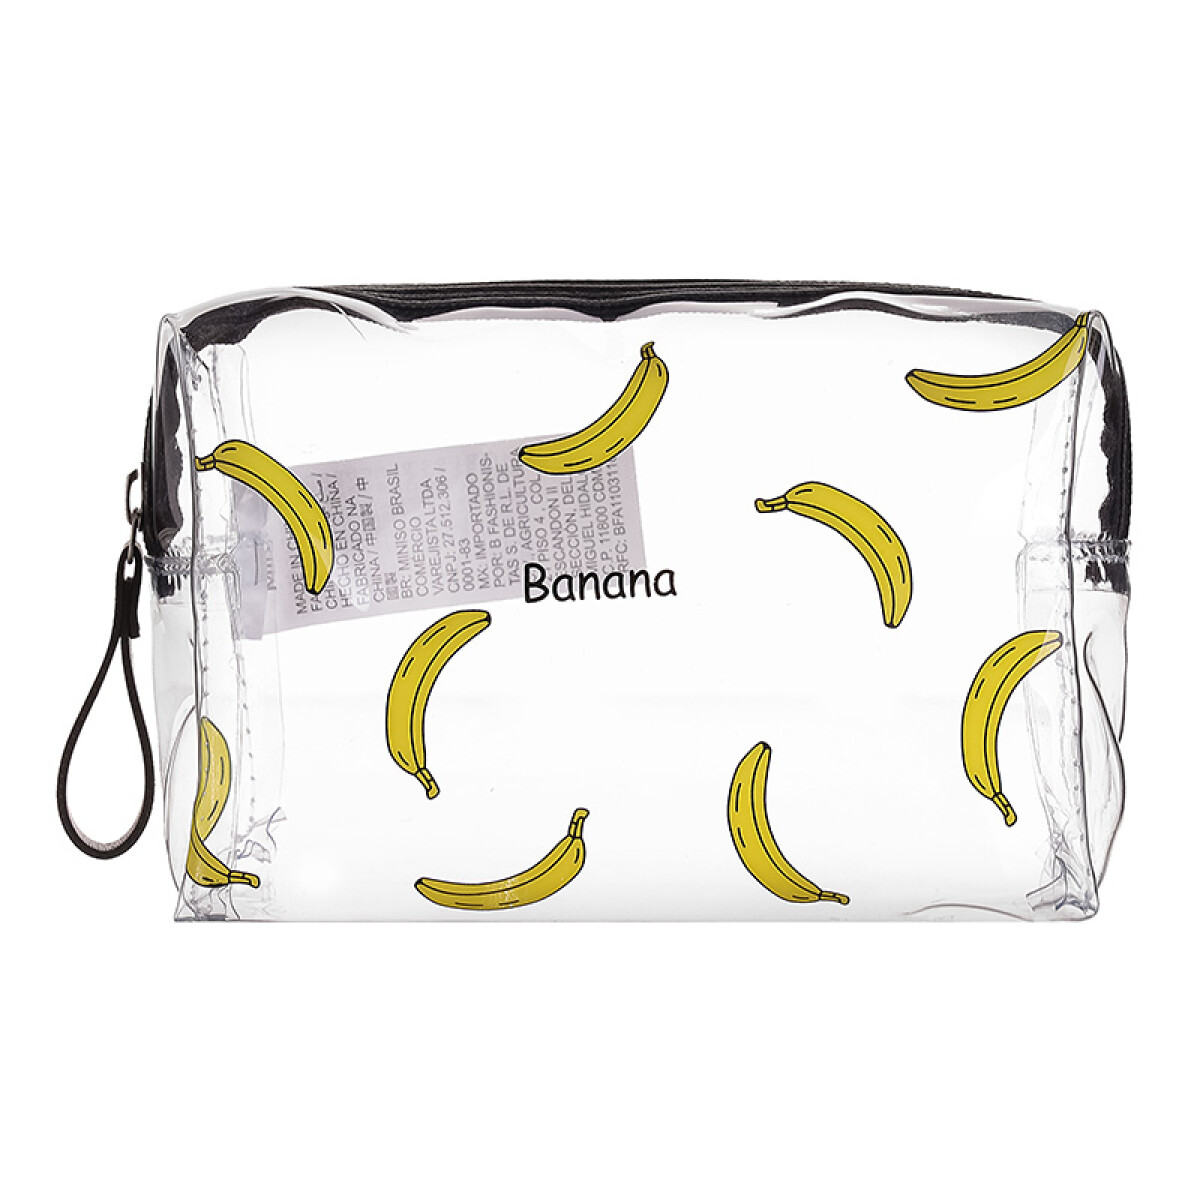 Portacosméticos Frutales - Banana 